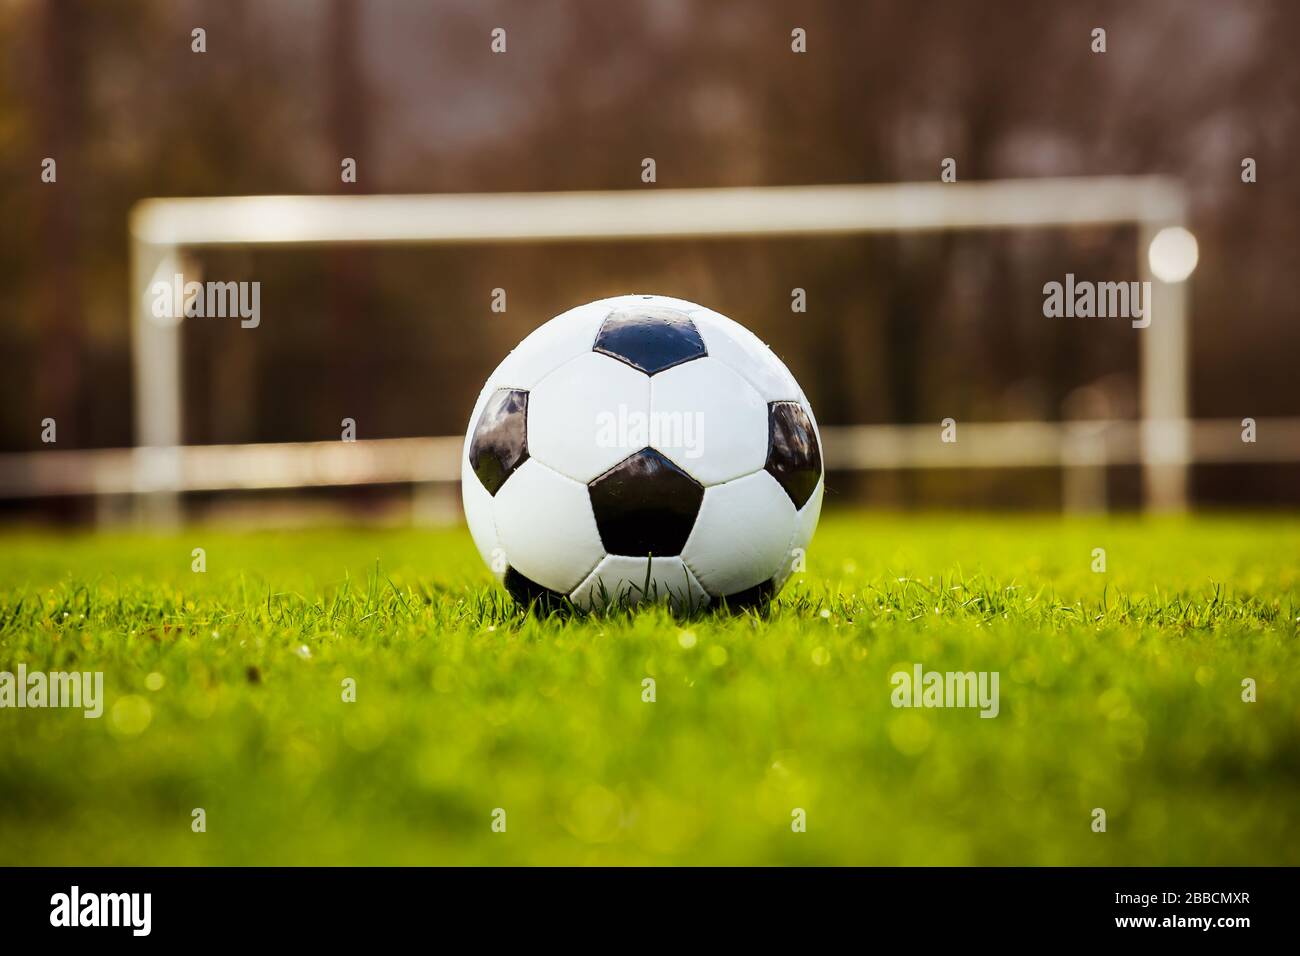 Classica pallina da calcio tipica in bianco e nero, posizionata sul tappeto erboso dello stadio. Tradizionale palla da calcio sul prato verde erba con spazio copia. Foto Stock